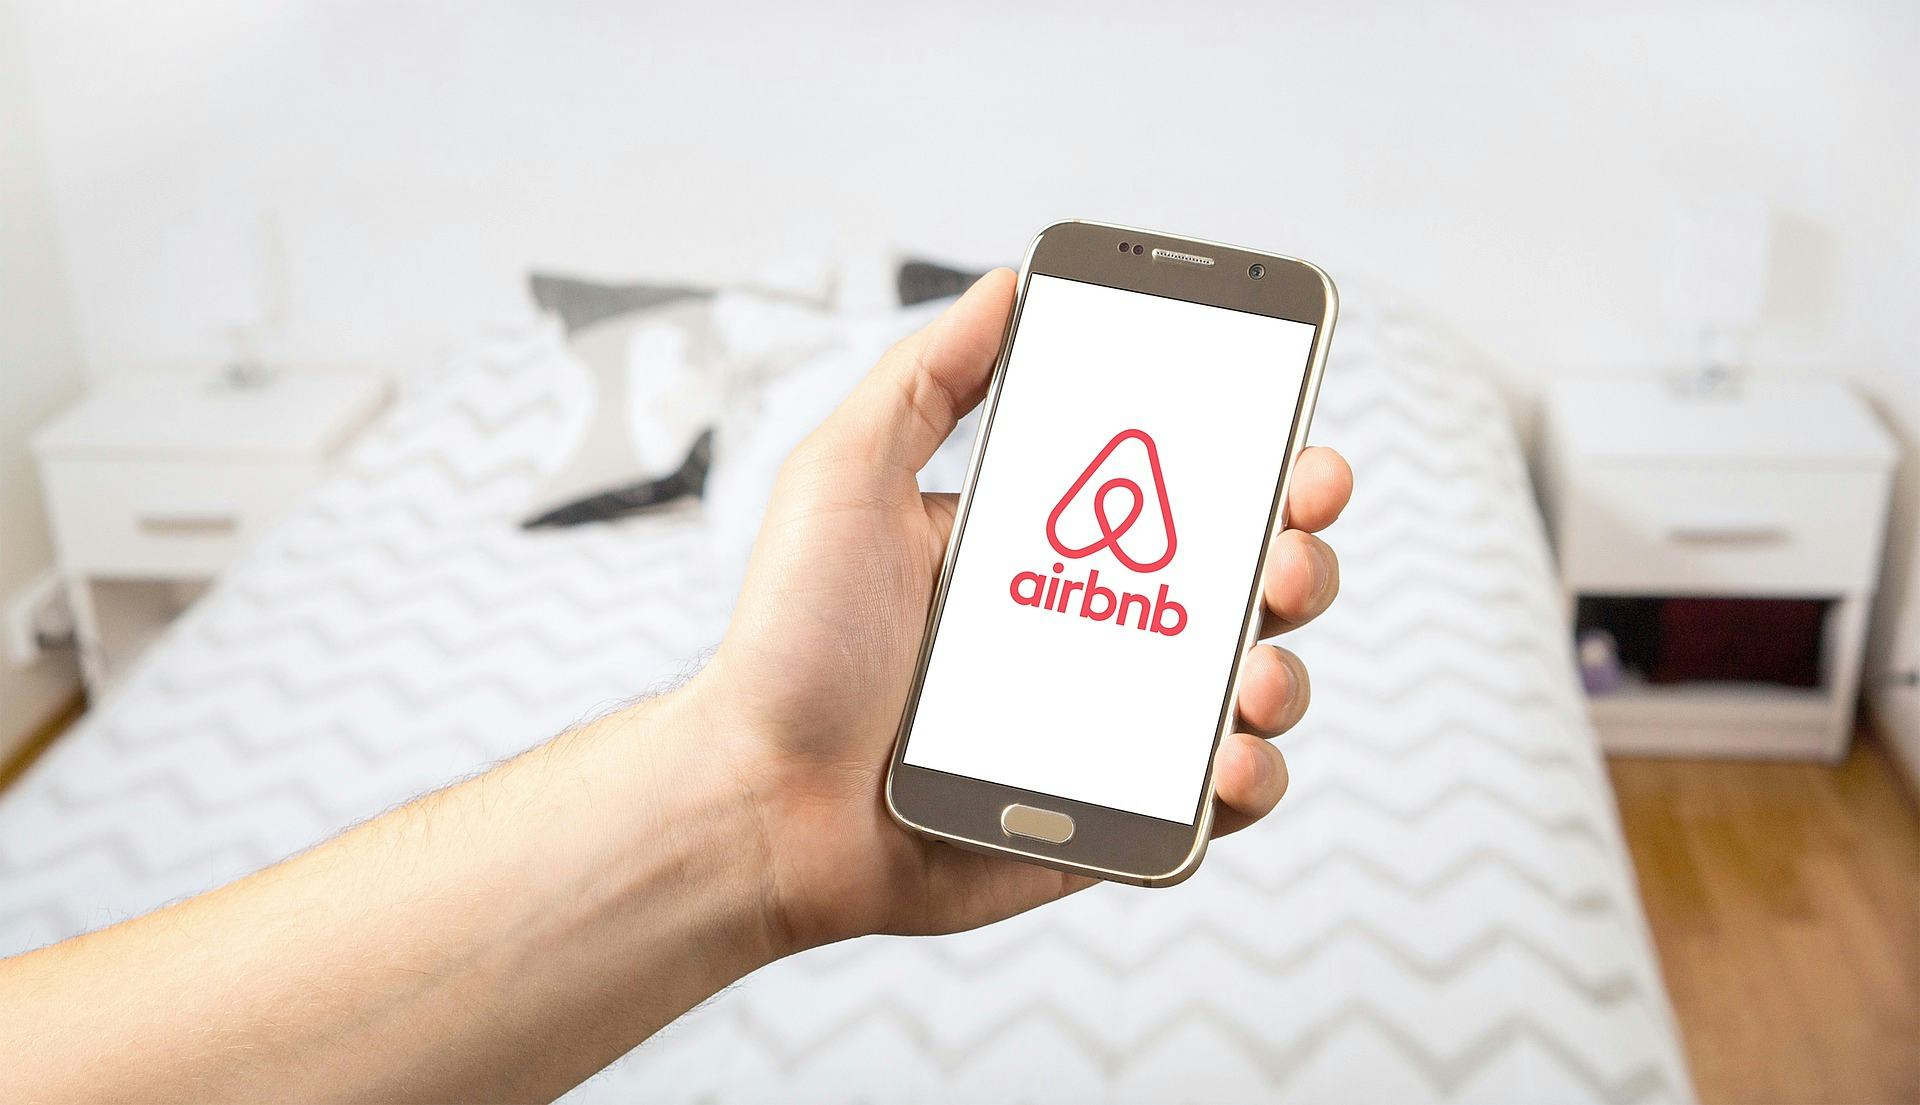 Speelt Airbnb voor verzekeraar? En hebben ze daar geen vergunning voor nodig?